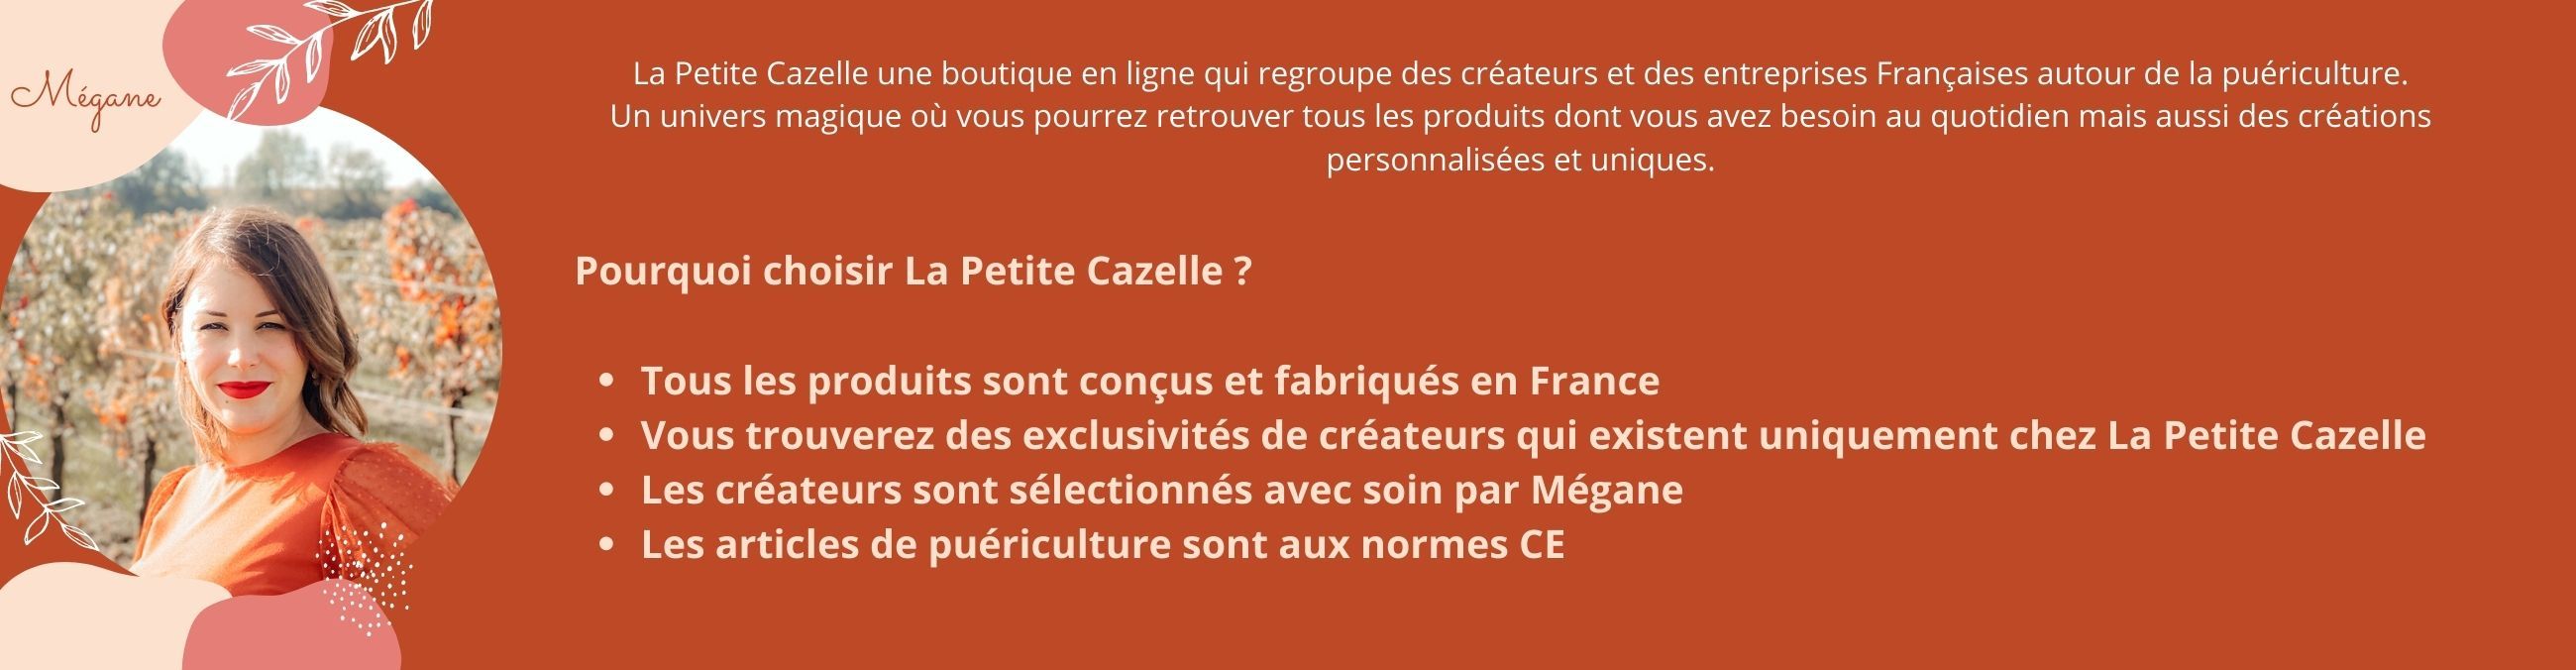 Présentation Mégane, fondatrice La Petite Cazelle